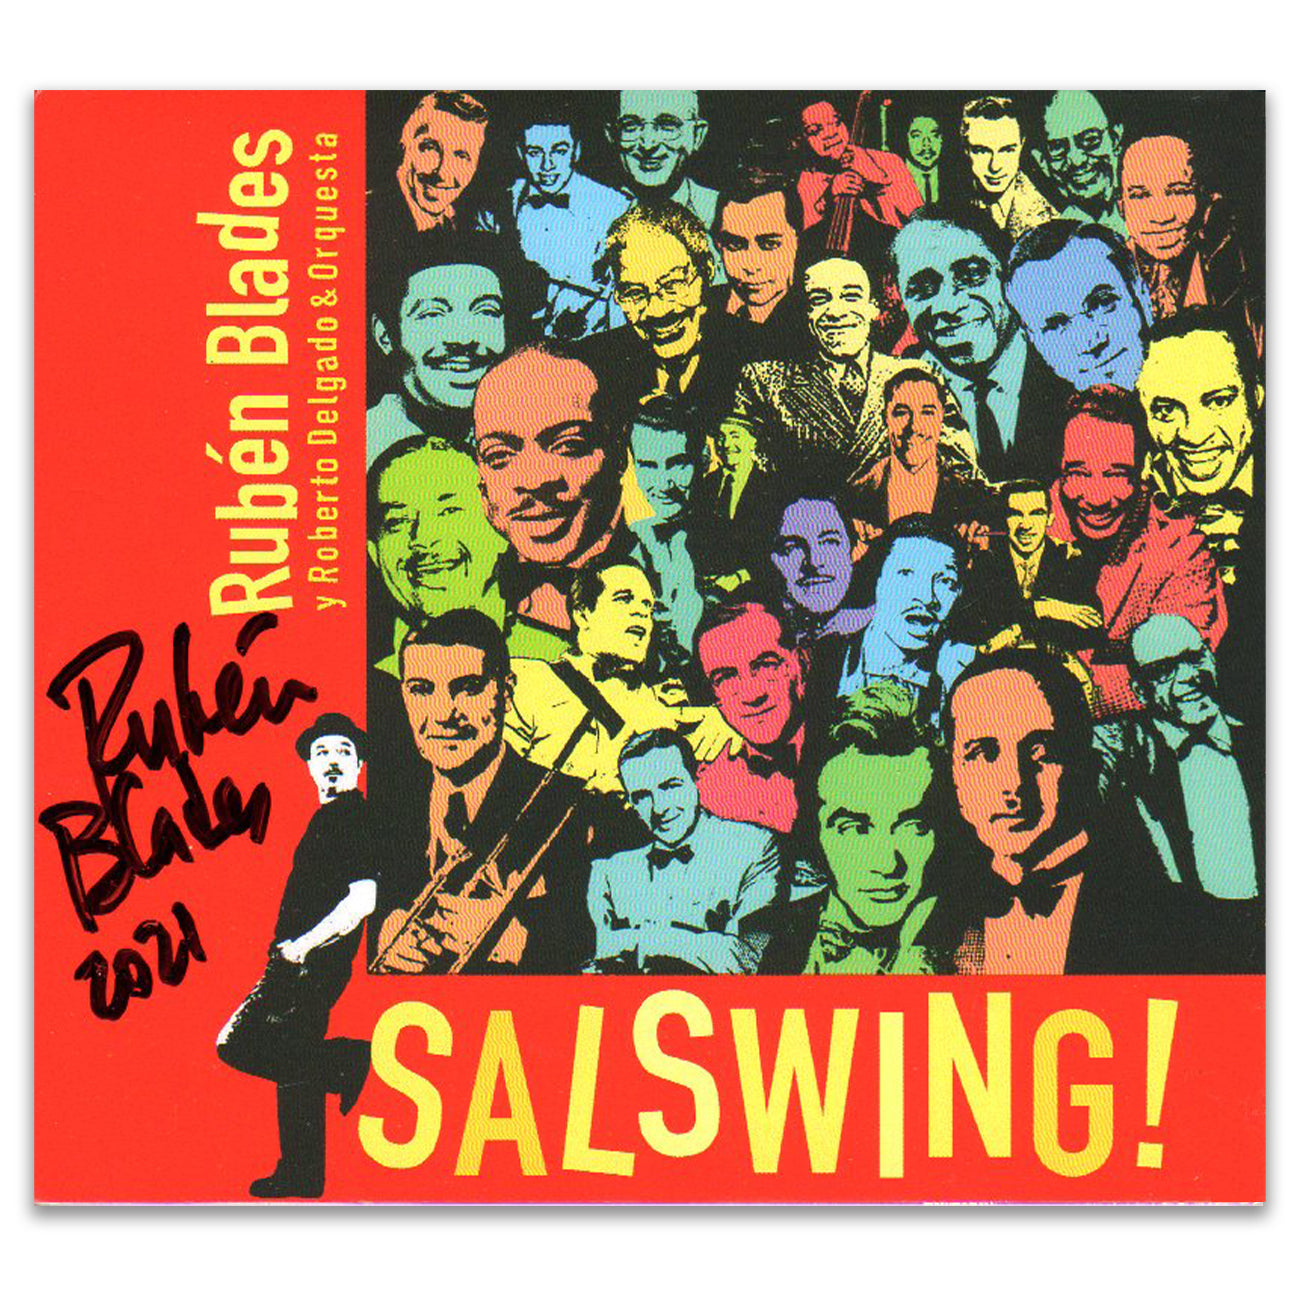 Rubén Blades con Roberto Delgado y Orquesta - "SALSWING!" Autographed CD